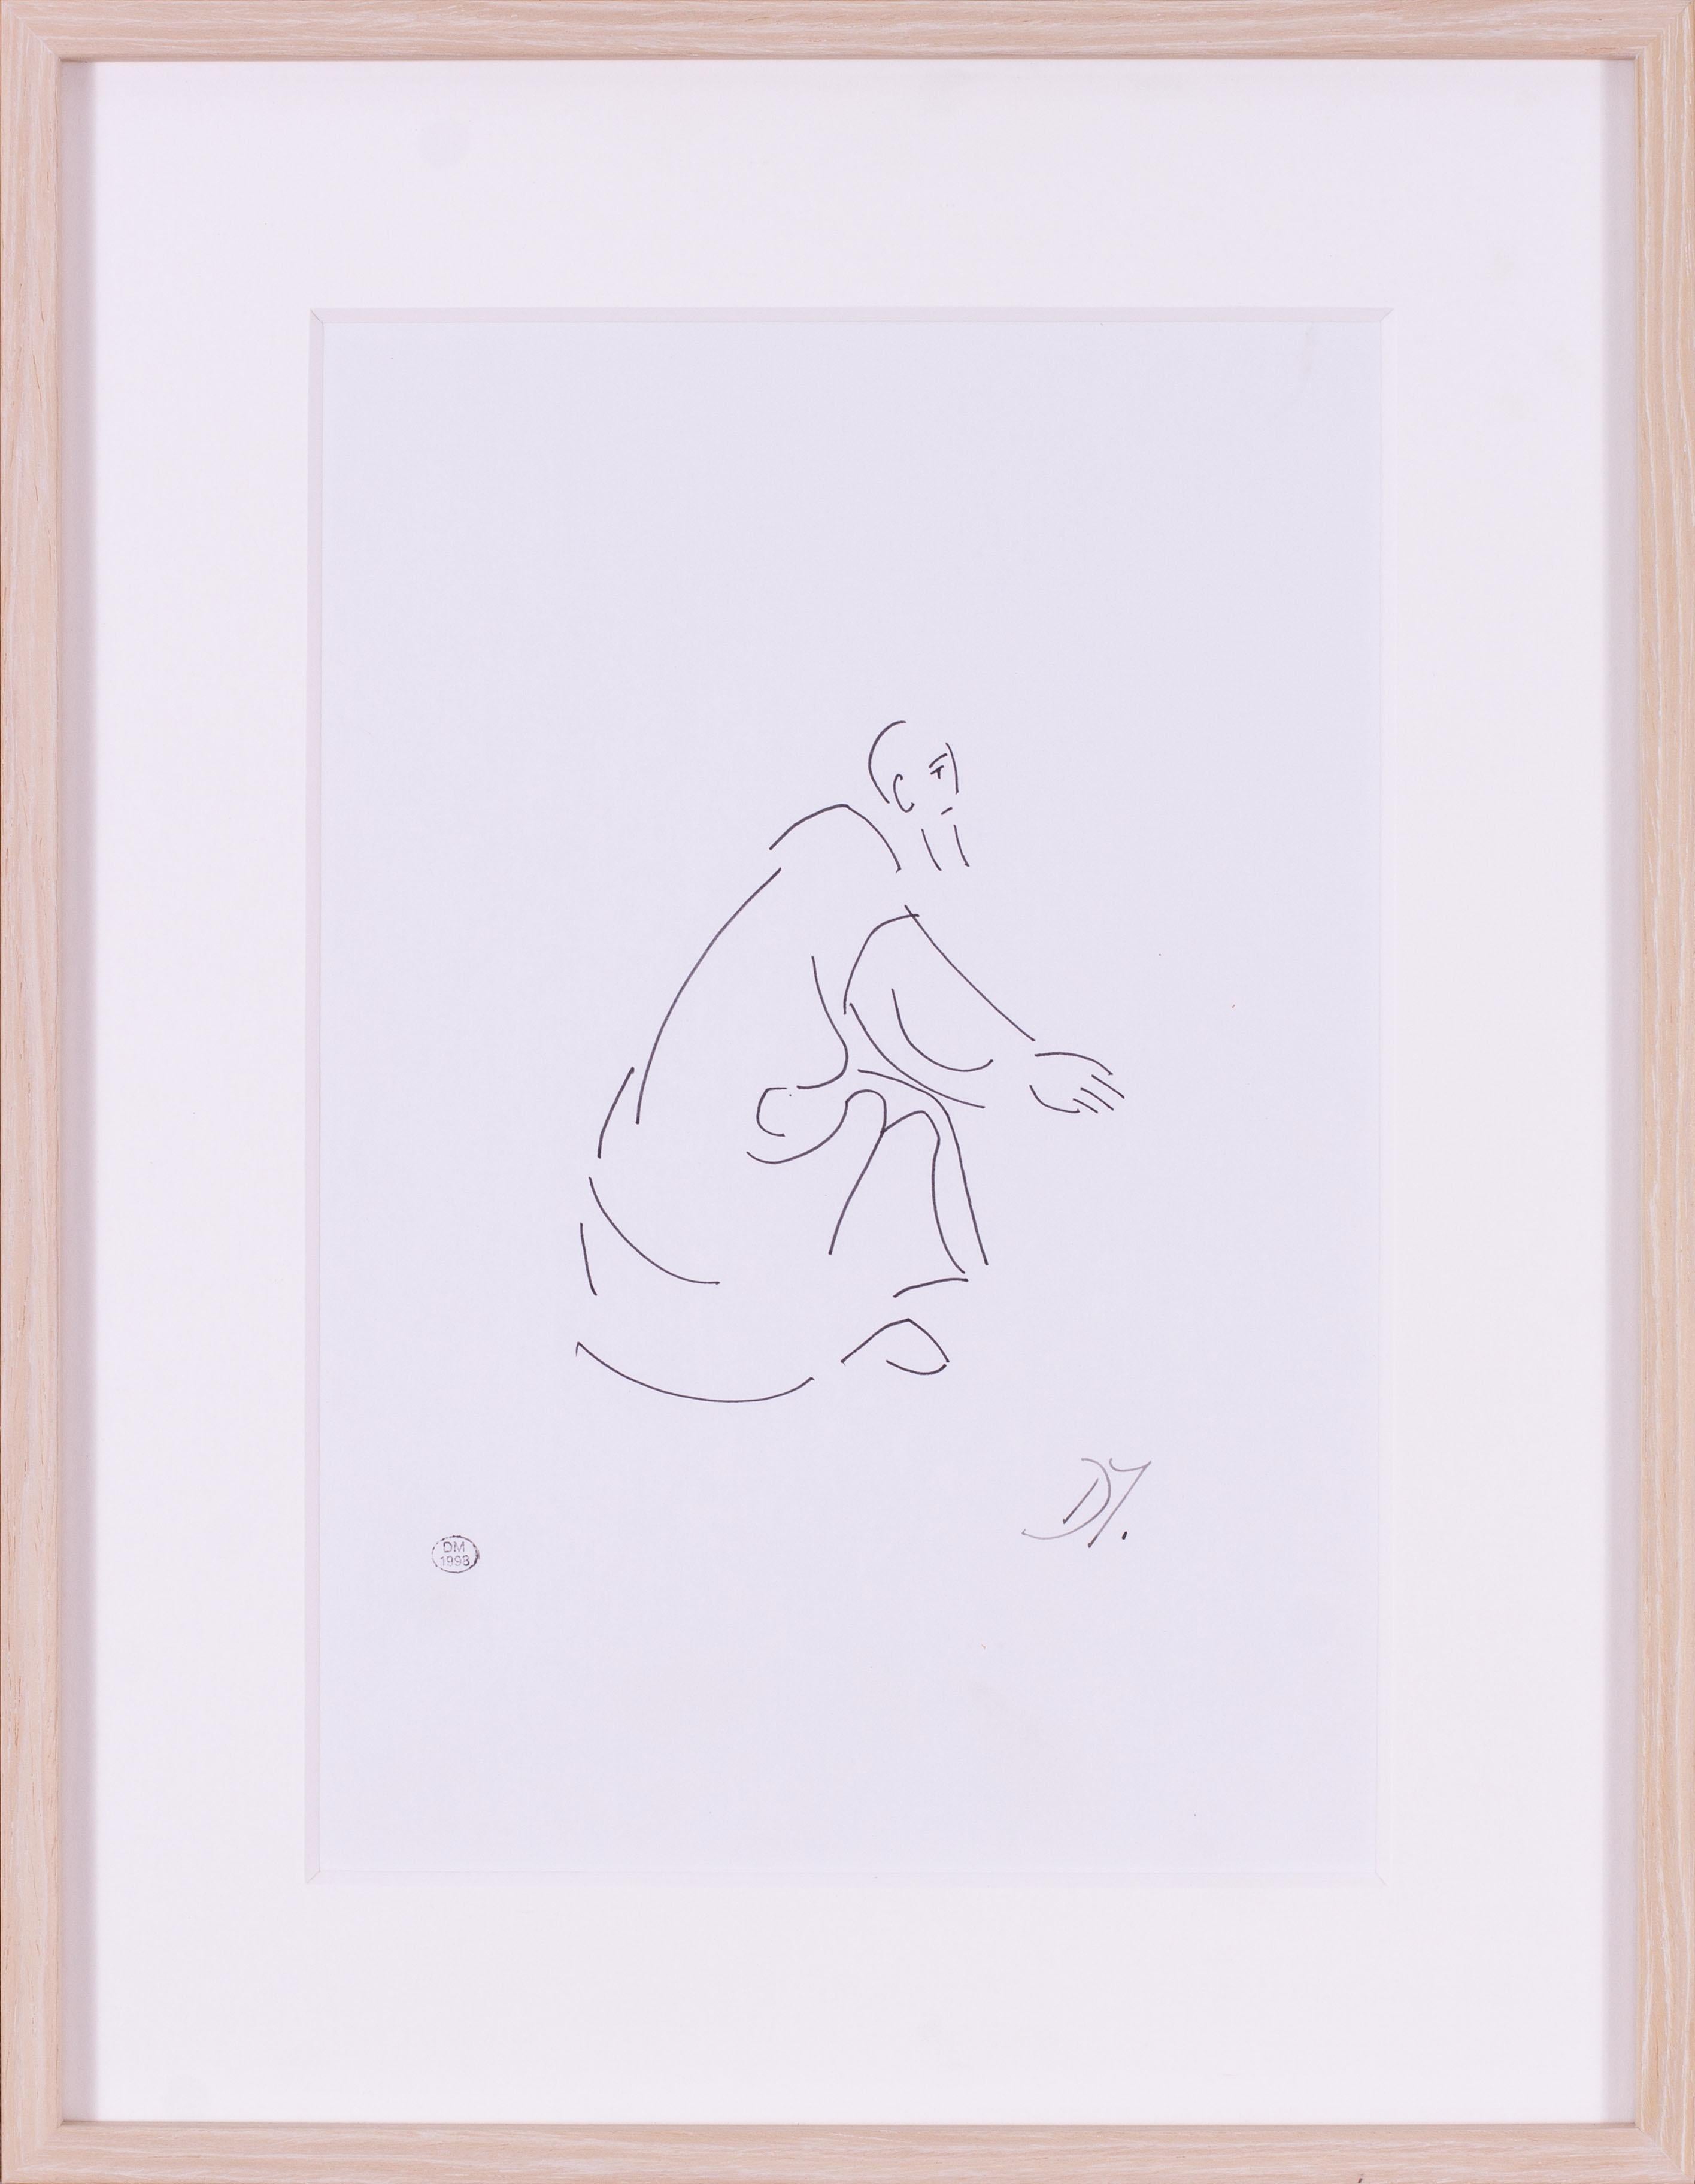 Es handelt sich um eine schöne und feine avantgardistische Zeichnung eines verehrten Heiligen der französischen Künstlerin Dora Maar.  Dora Maar war eine eigenständige Künstlerin, die sich durch eindrucksvolle Fotografien, innovative Techniken und